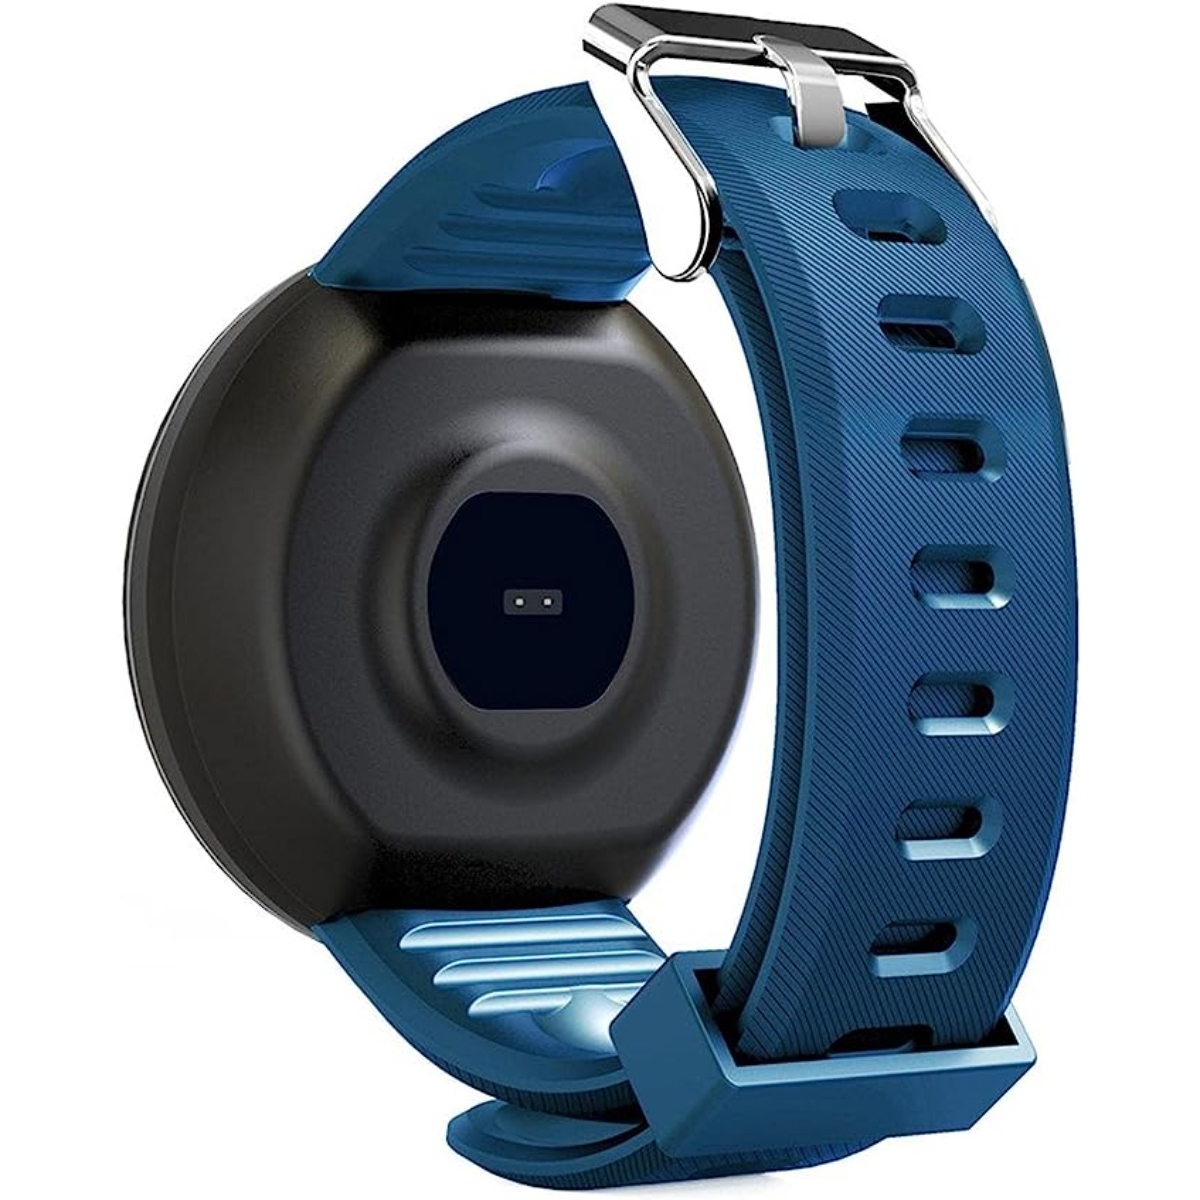 Reloj Smartwatch Klack Kd18 Con Frecuencia Cardíaca, Presión Arterial Y Notificaciones  MKP